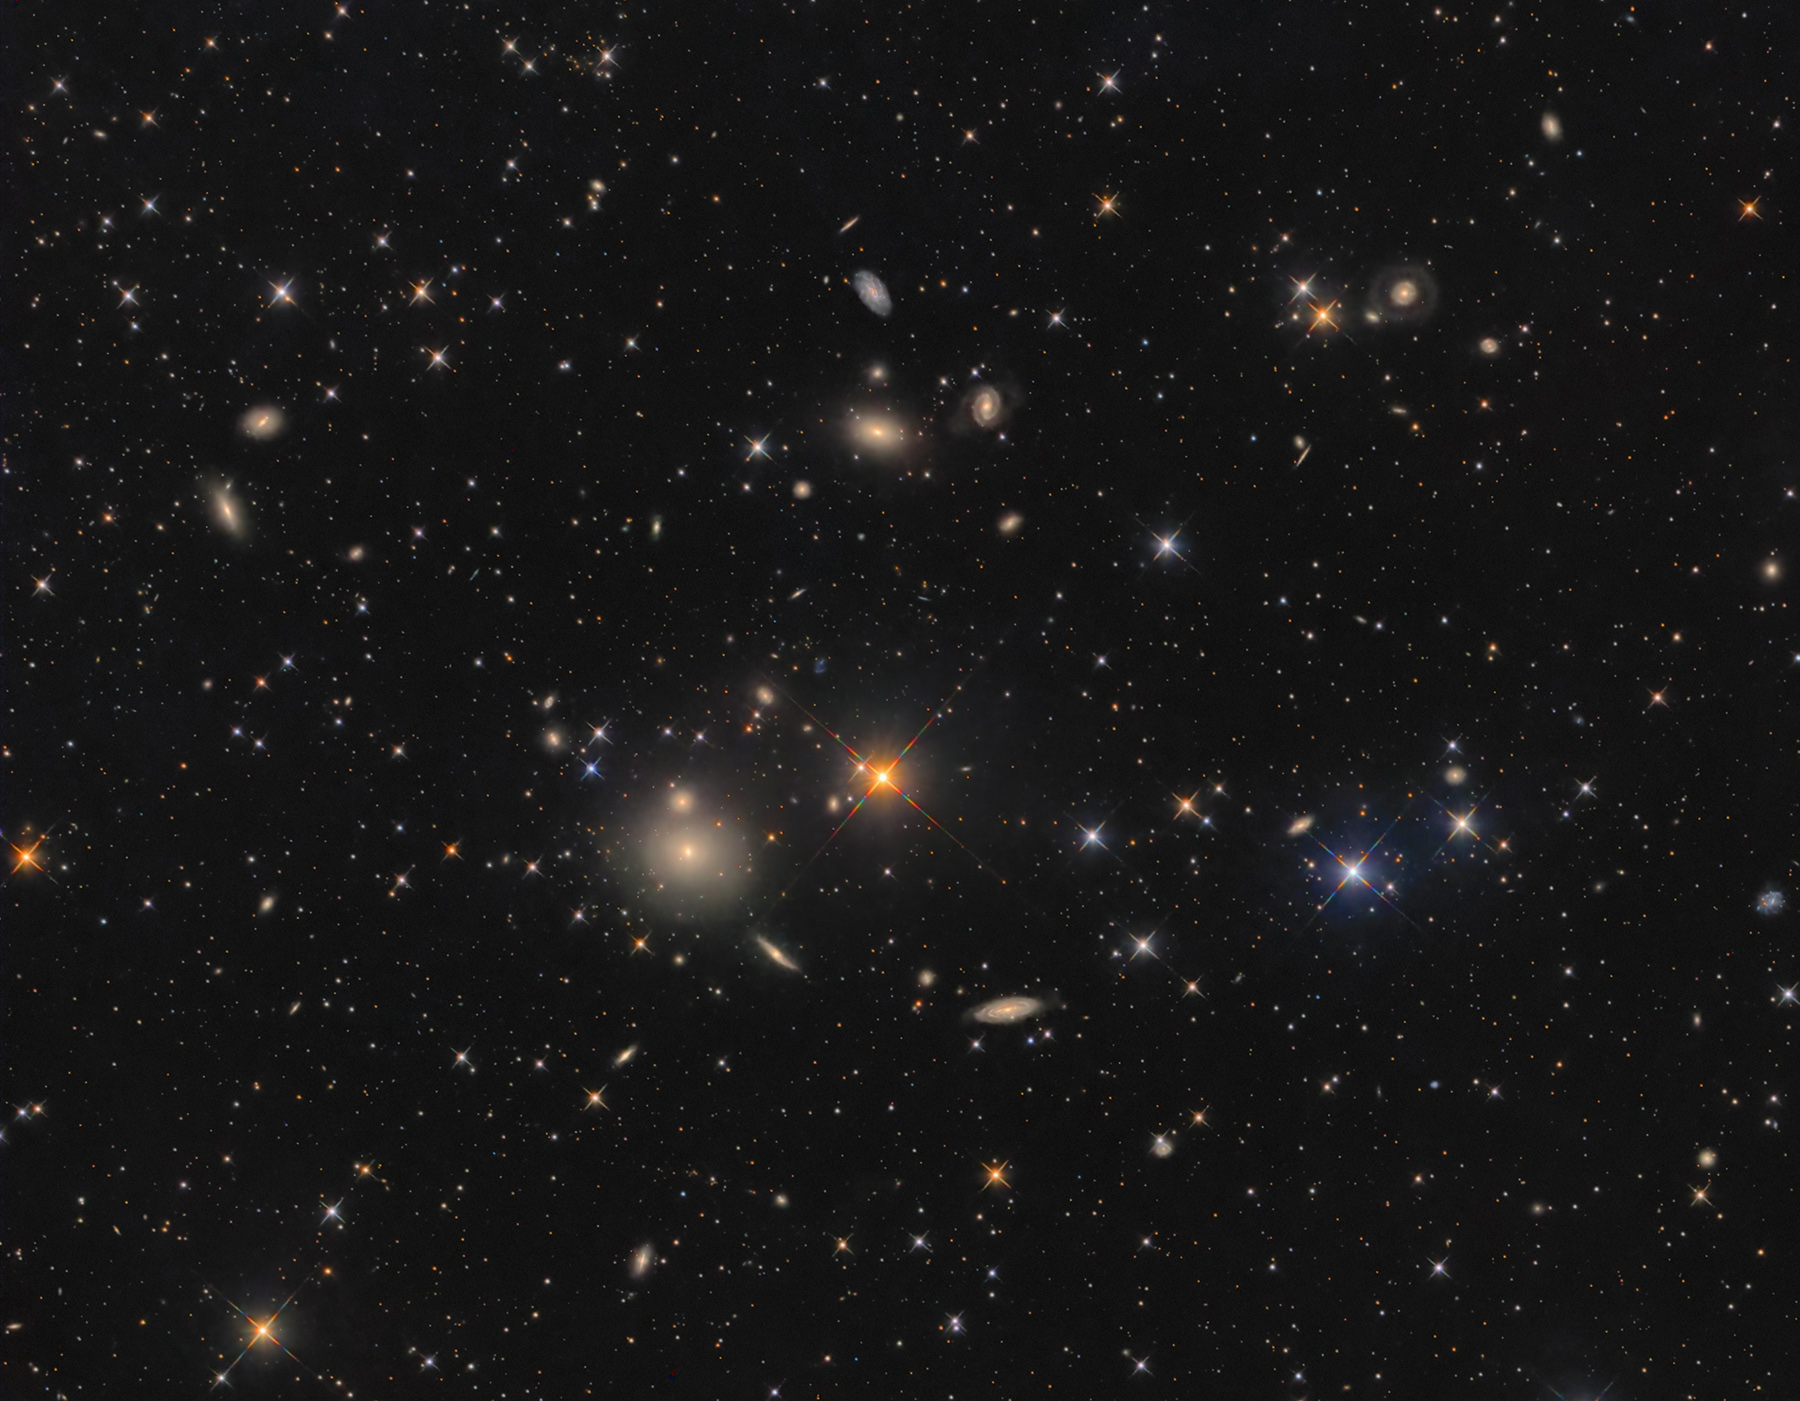 NGC507